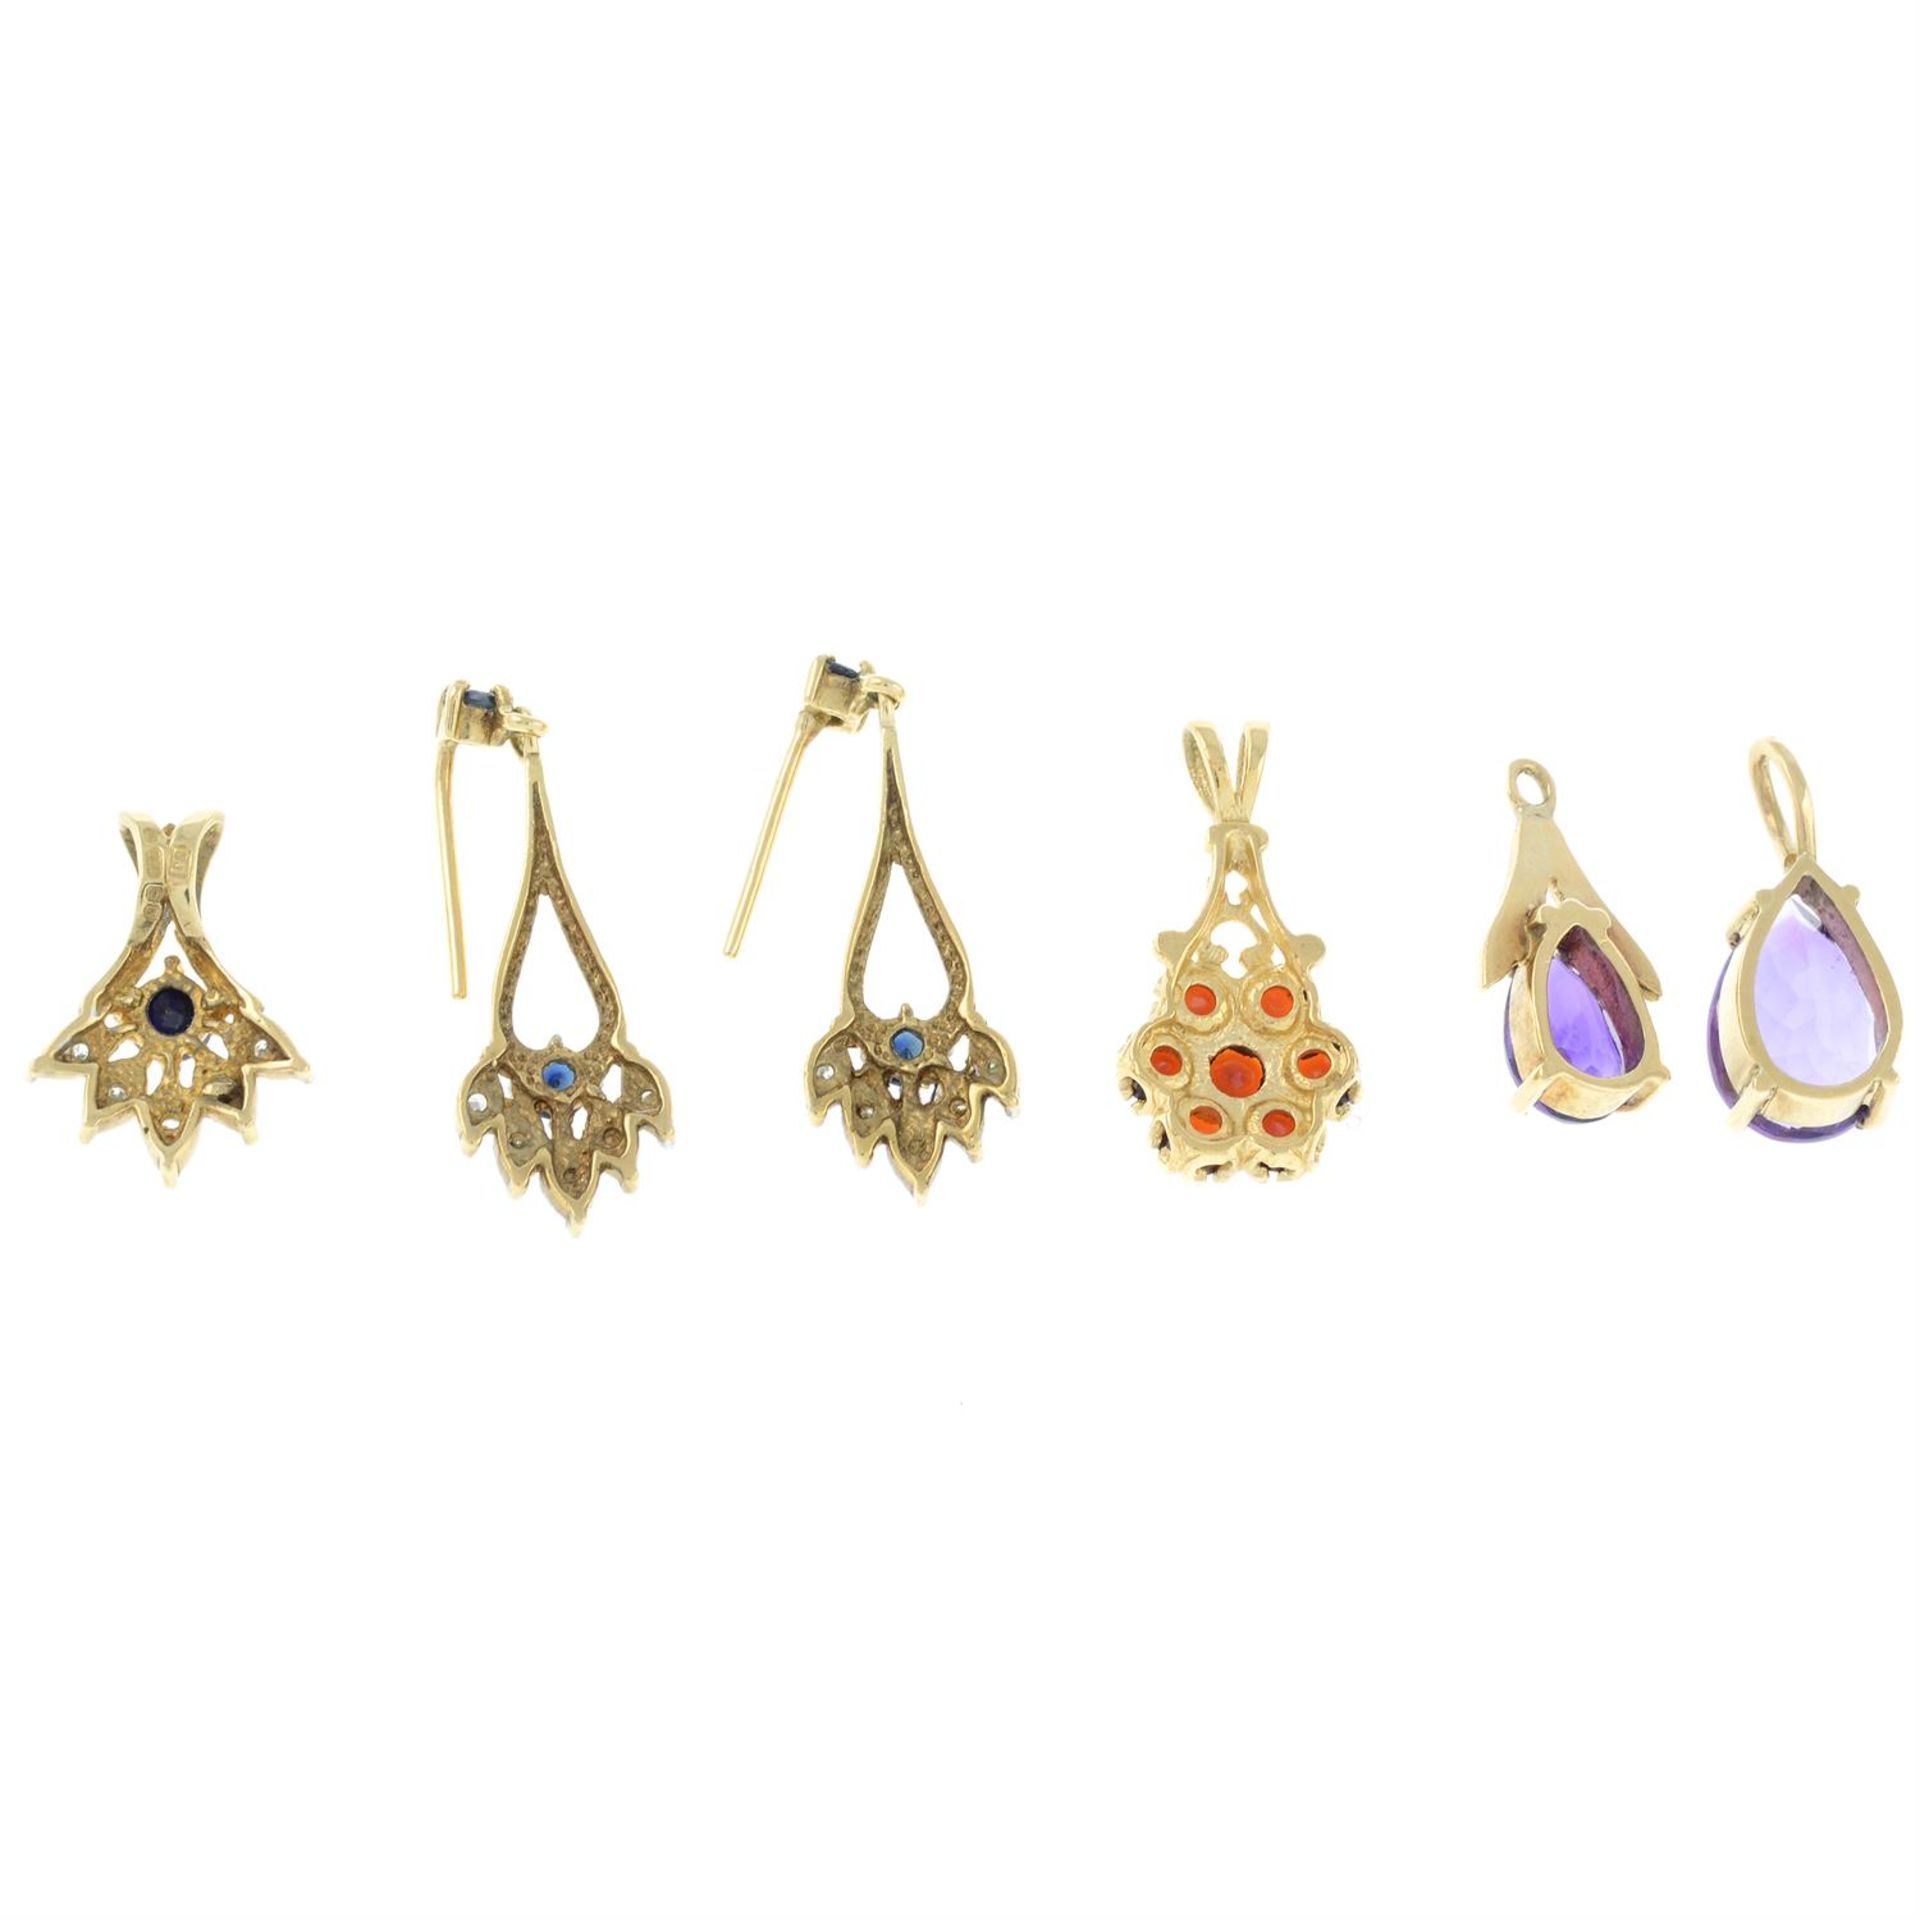 Four gem-set pendants, together with a 9ct gold gem-set pendant. - Image 2 of 2